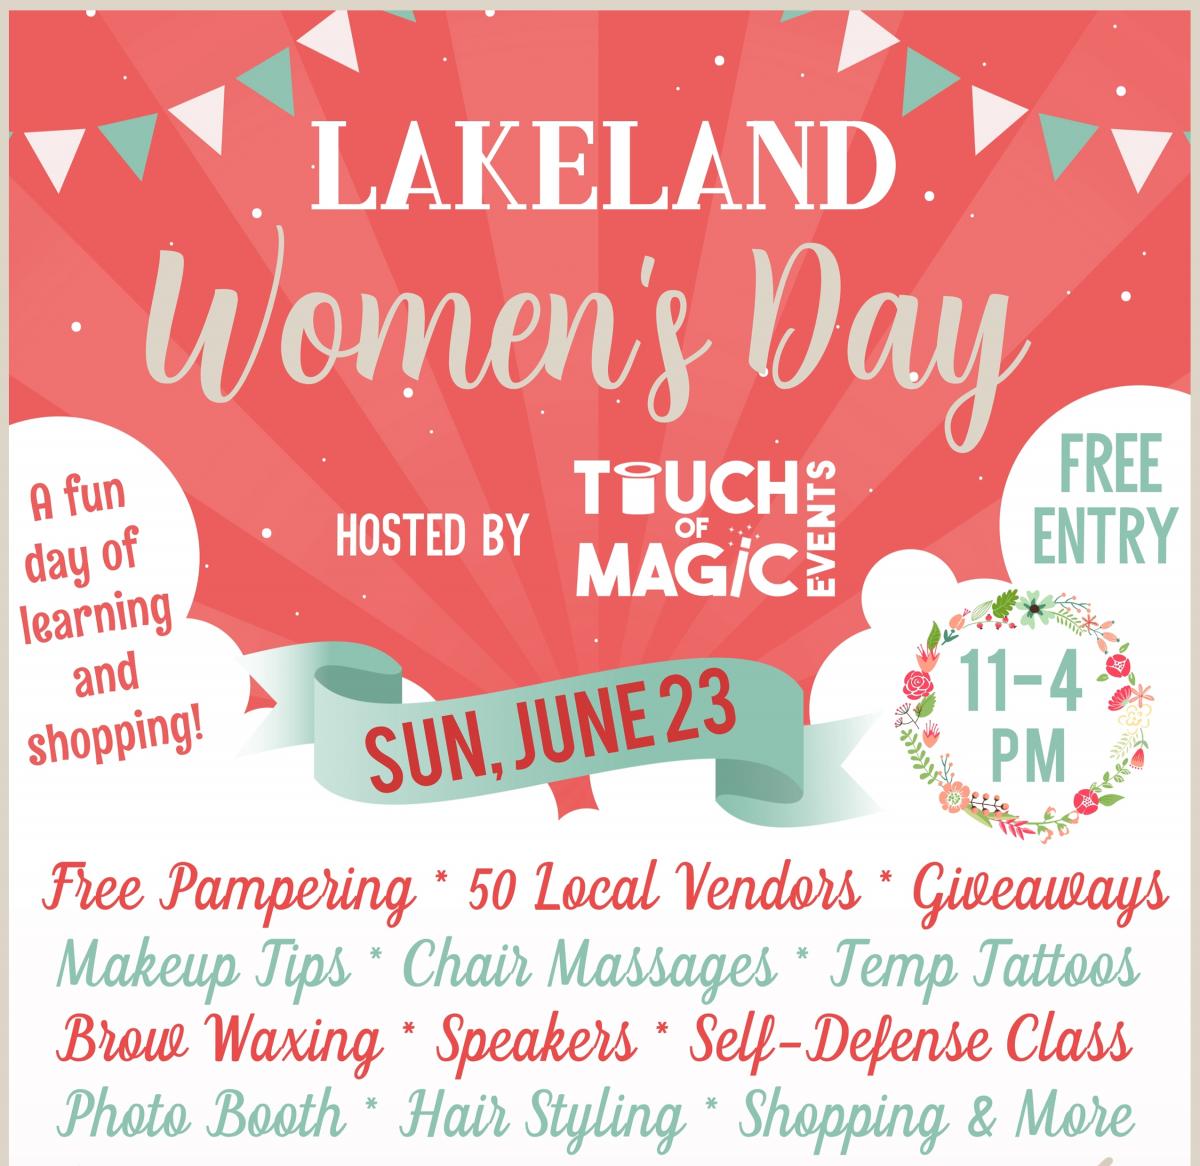 Lakeland Women's Day